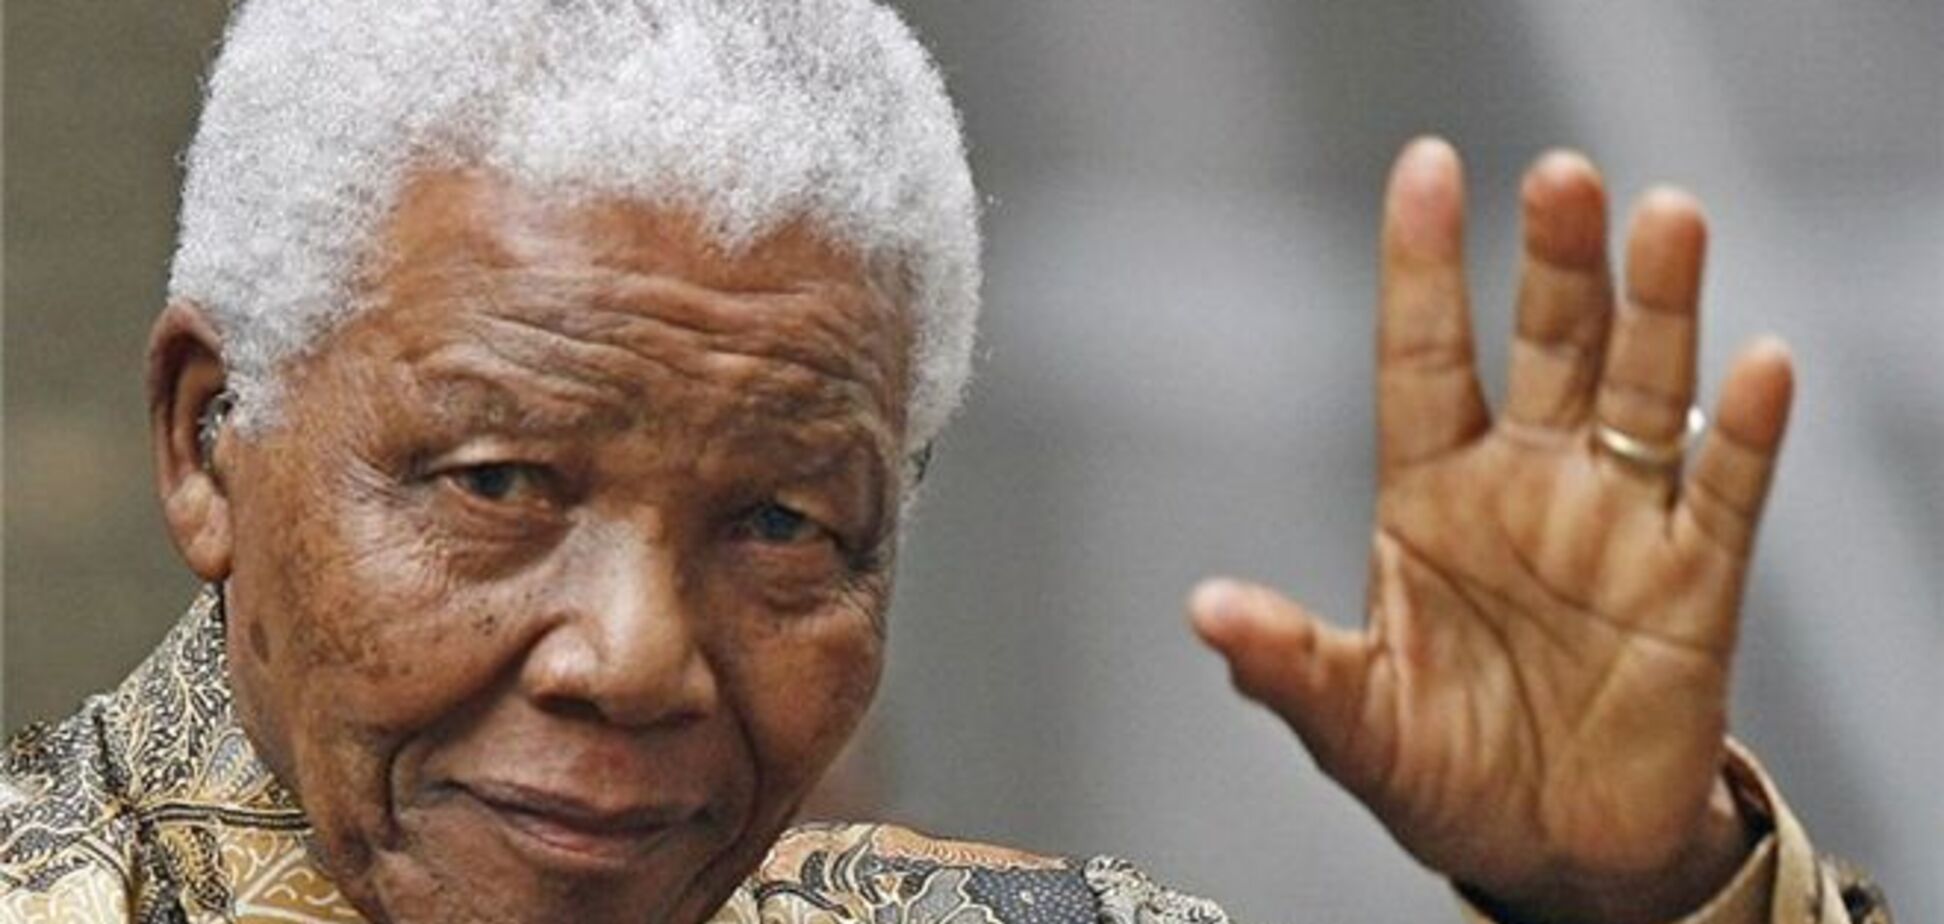 СМИ сообщили о выписке Манделы, власти опровергают